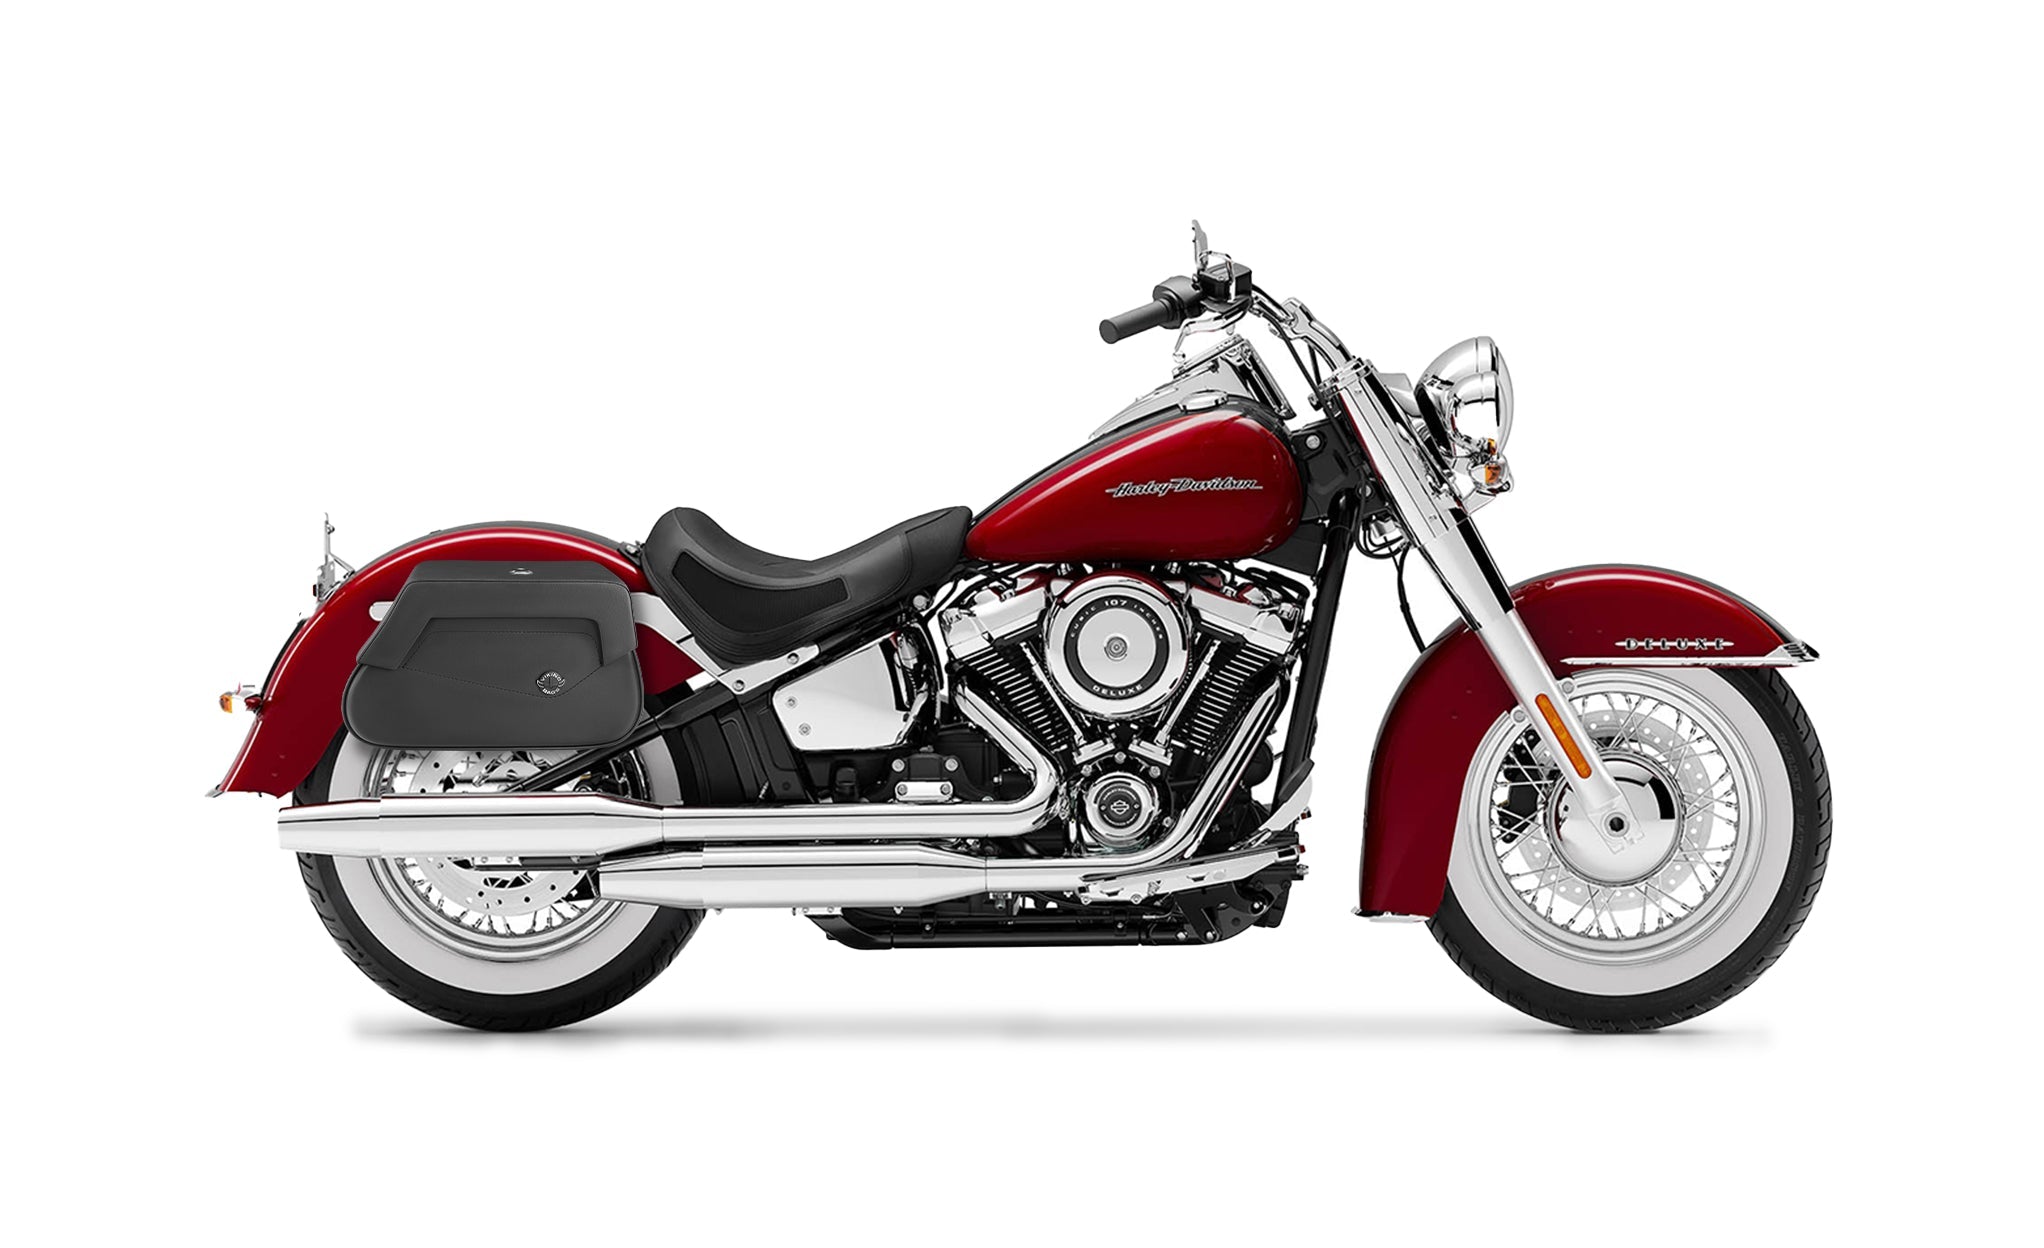 Viking Loki Plain Small Leather Motorcycle Saddlebags For Harley Softail Deluxe Flstn I on Bike Photo @expand